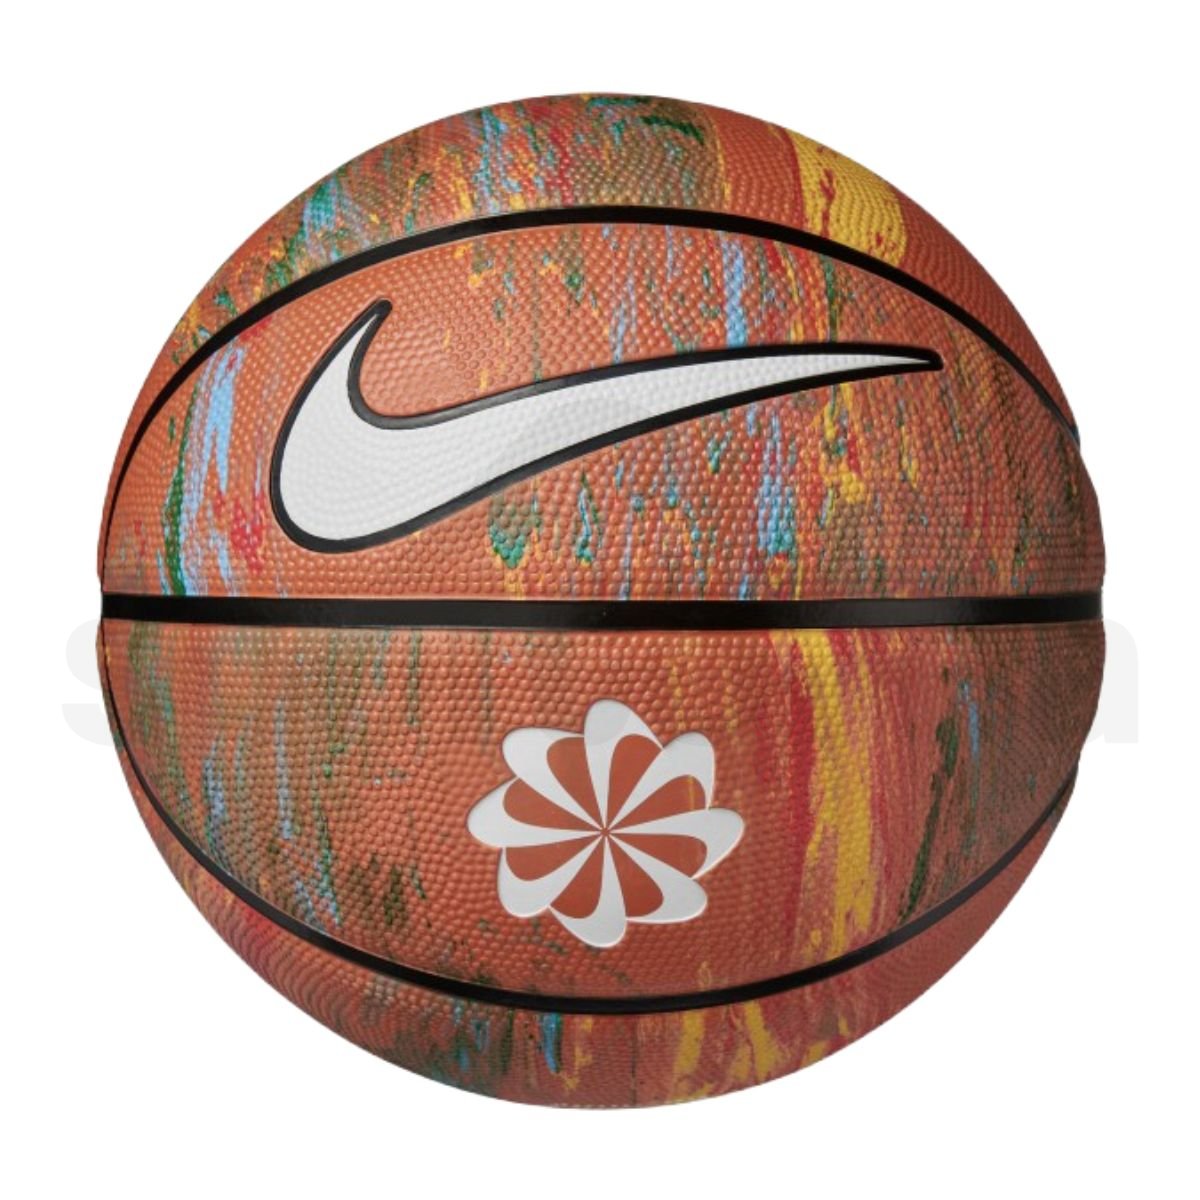 Basketbalový míč Nike Everyday Playground 8P Next - hnědá